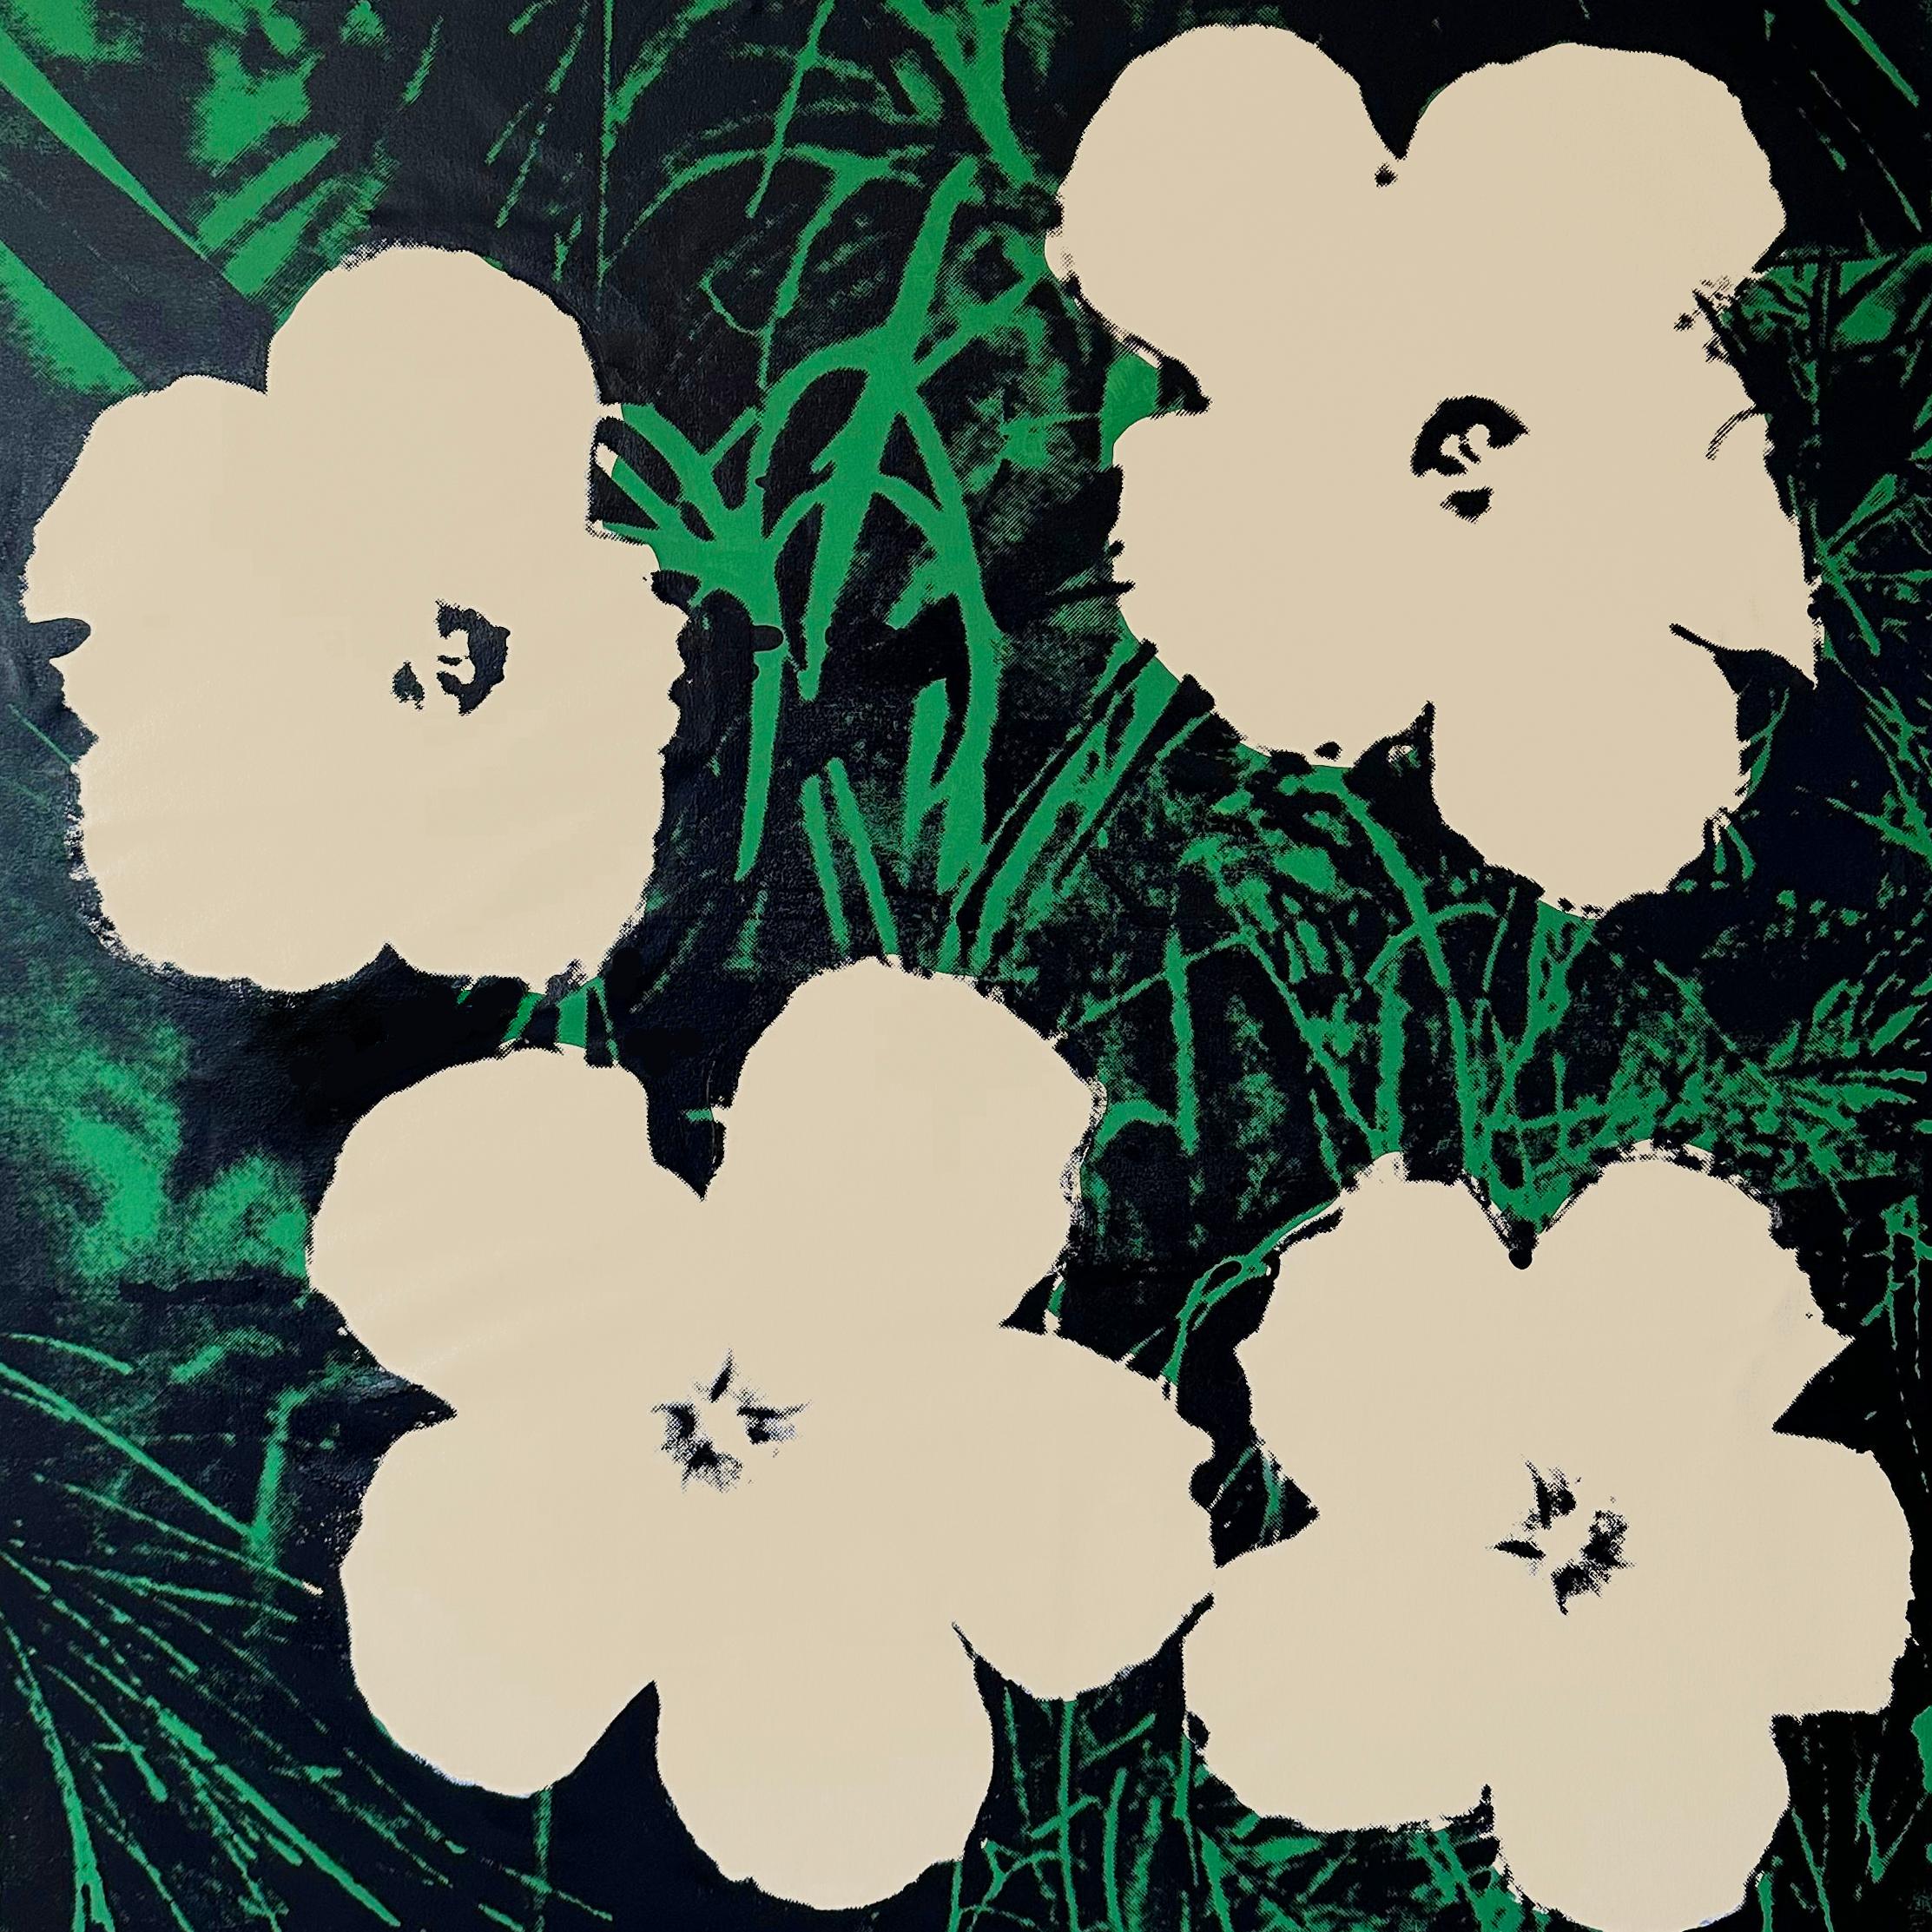 Verweigerte Warhol-Blumen, (creme/weiß) Siebdruck von Charles Lutz
Siebdruck und Acryl auf Leinwand mit Verweigerungsstempel des Andy Warhol Art Authentication Board.
48 x 48" Zoll
2008

Lutz' Serie "Warhol Denied" aus dem Jahr 2007 erregte